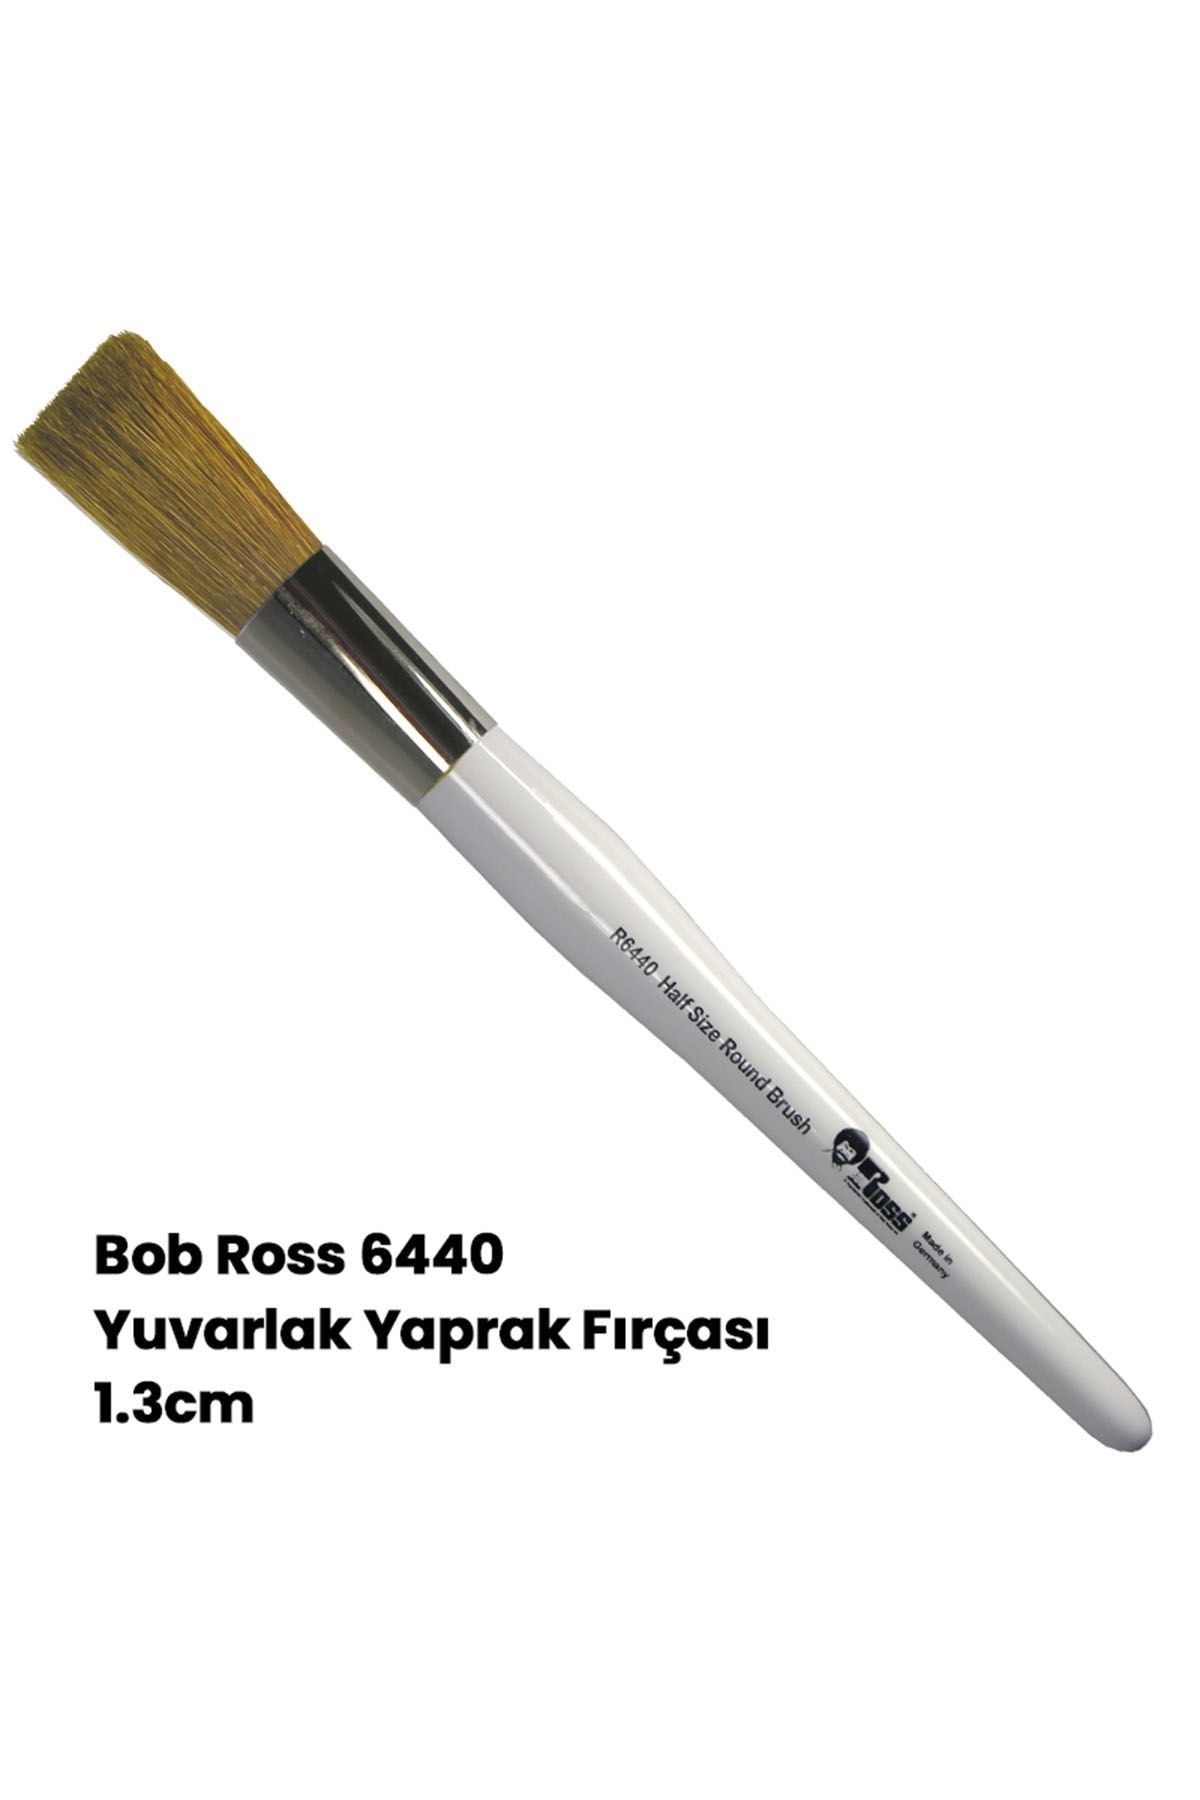 Bob Ross Yuvarlak Yaprak Fırçası 1.3cm 6440